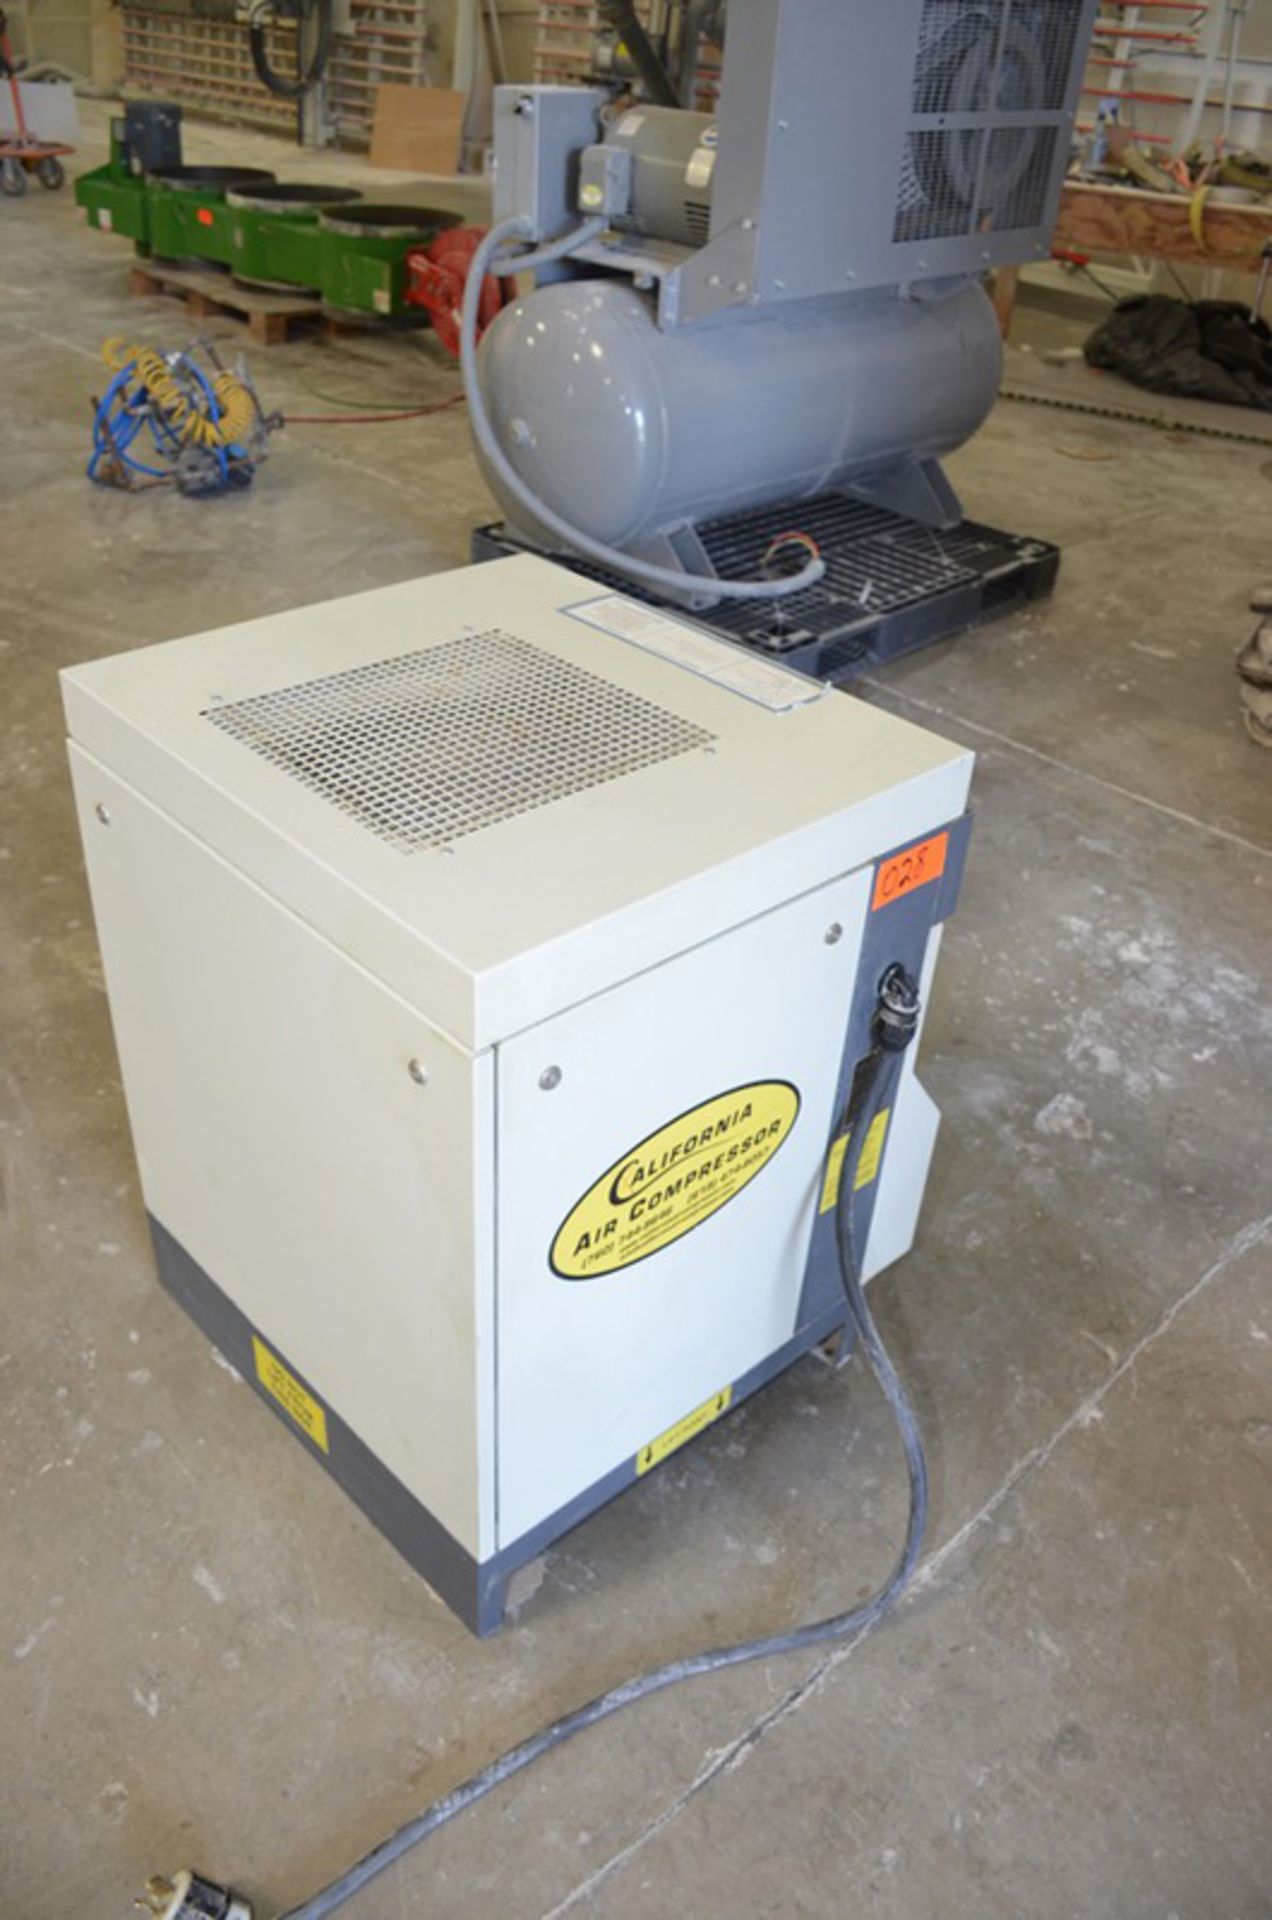 2002 Curtis, Mdl: KS10 Air Dryer, S/N: 55857, 200 Voltage - Image 4 of 5